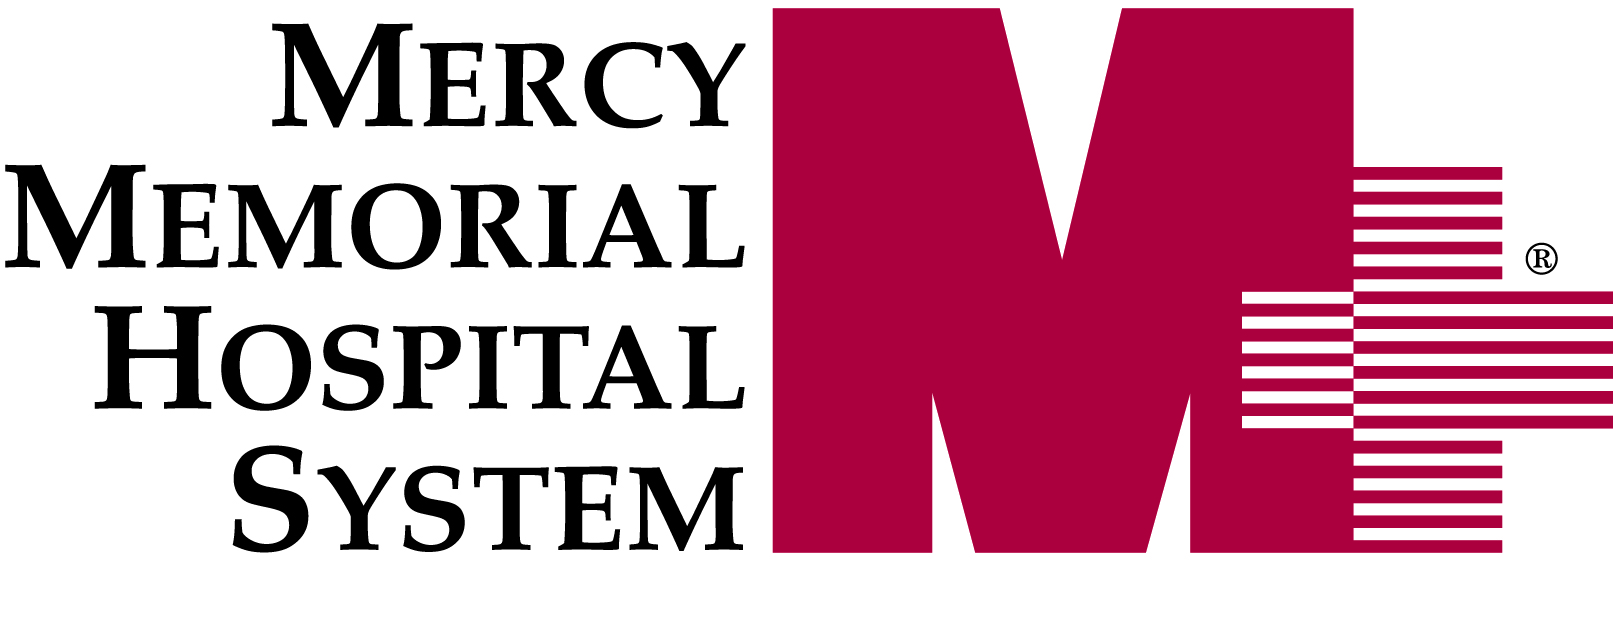 Mercy Memorial Hospital System Company Logo